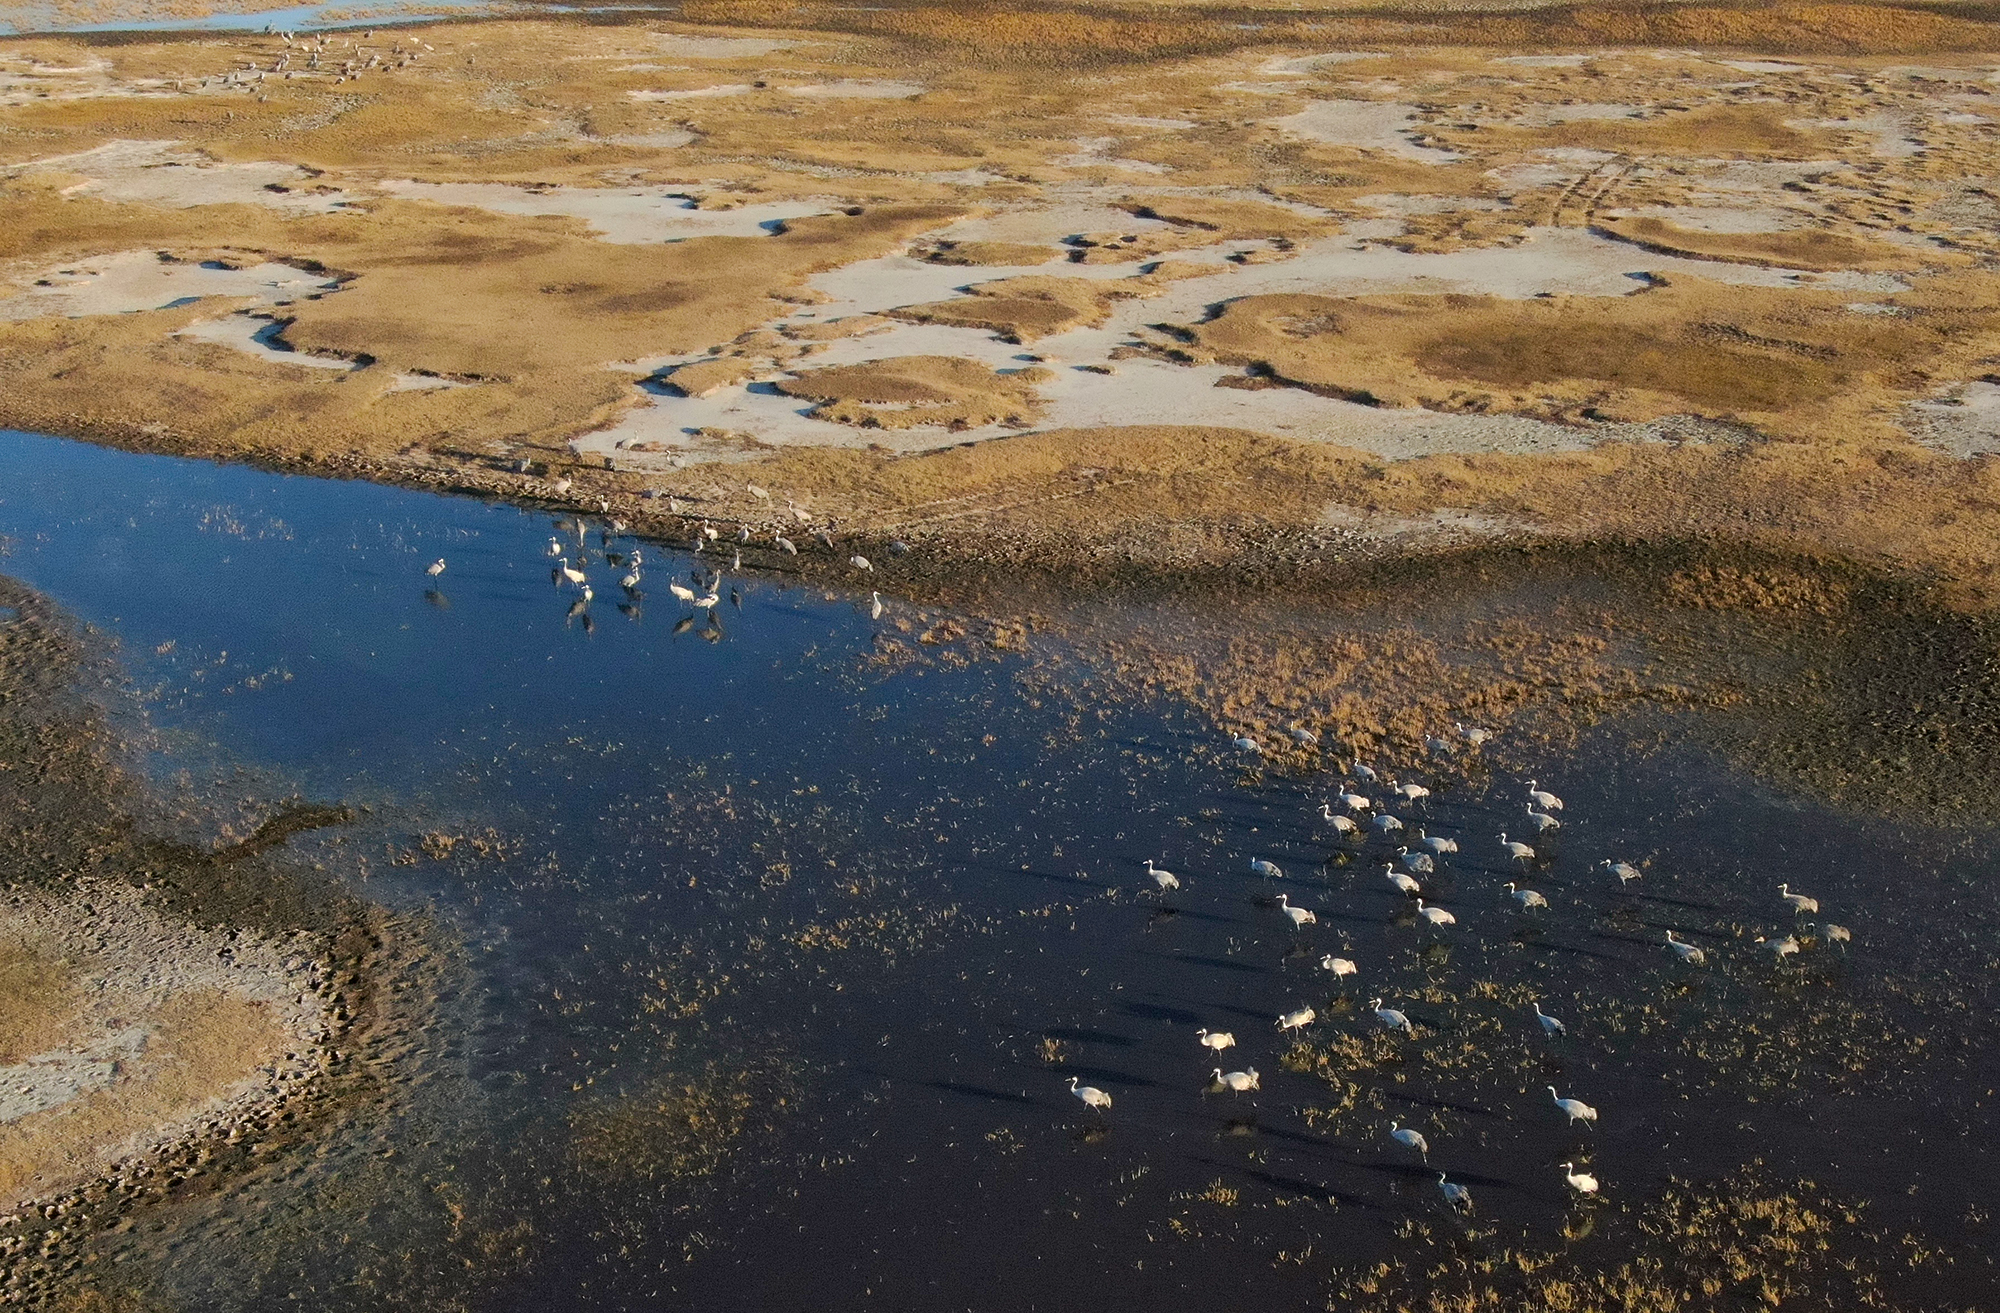 吉林中西湿地保护区 今秋迎来候鸟停歇高峰——湿地生物多样性保护成效显著